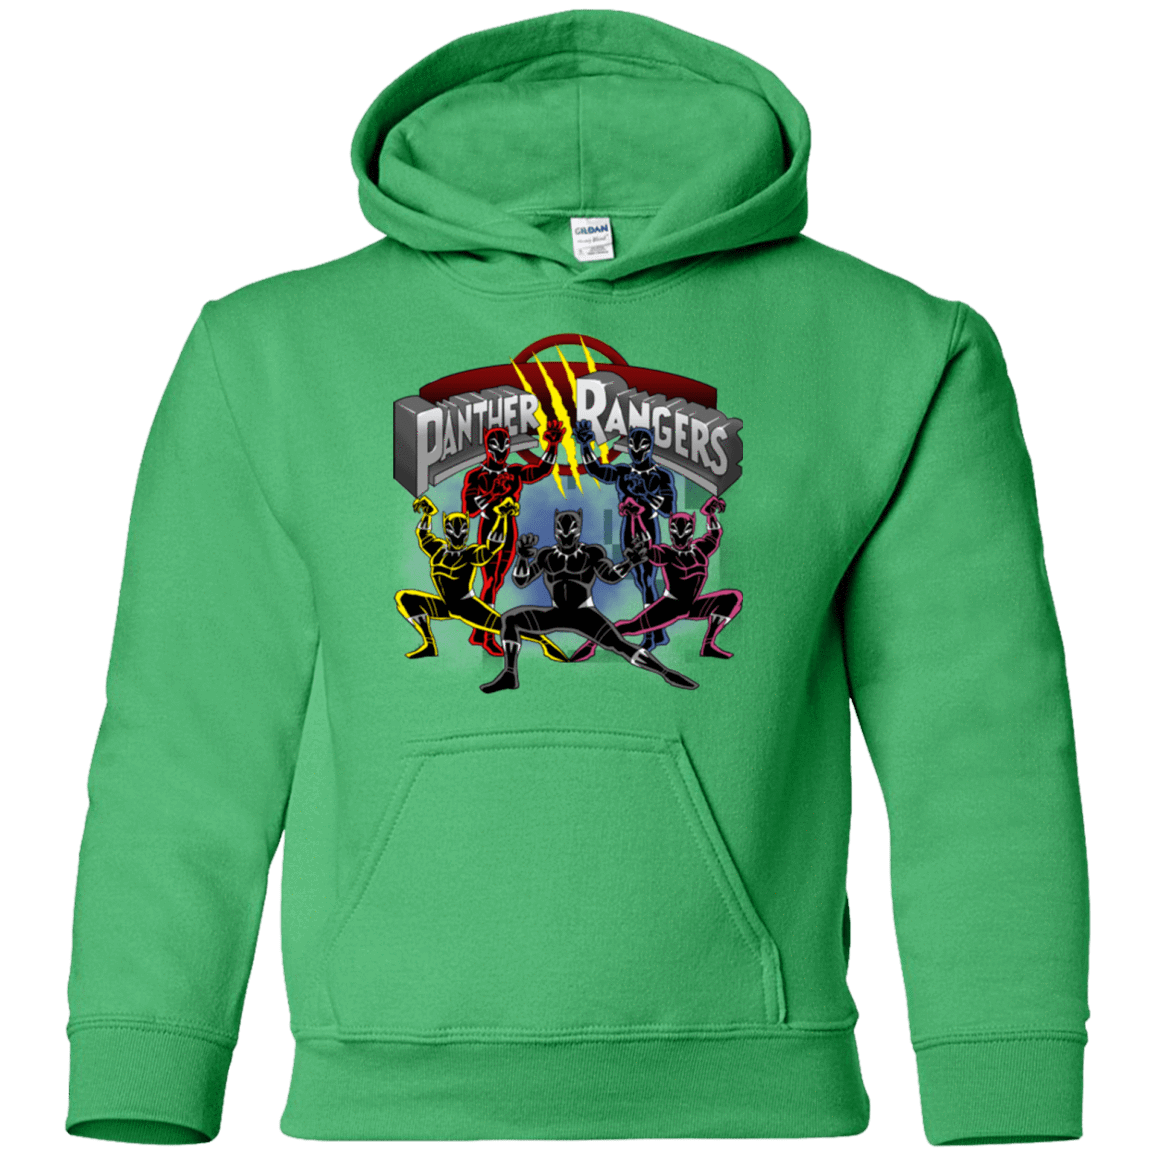 Sweatshirts Irish Green / YS Panther Rangers Youth Hoodie